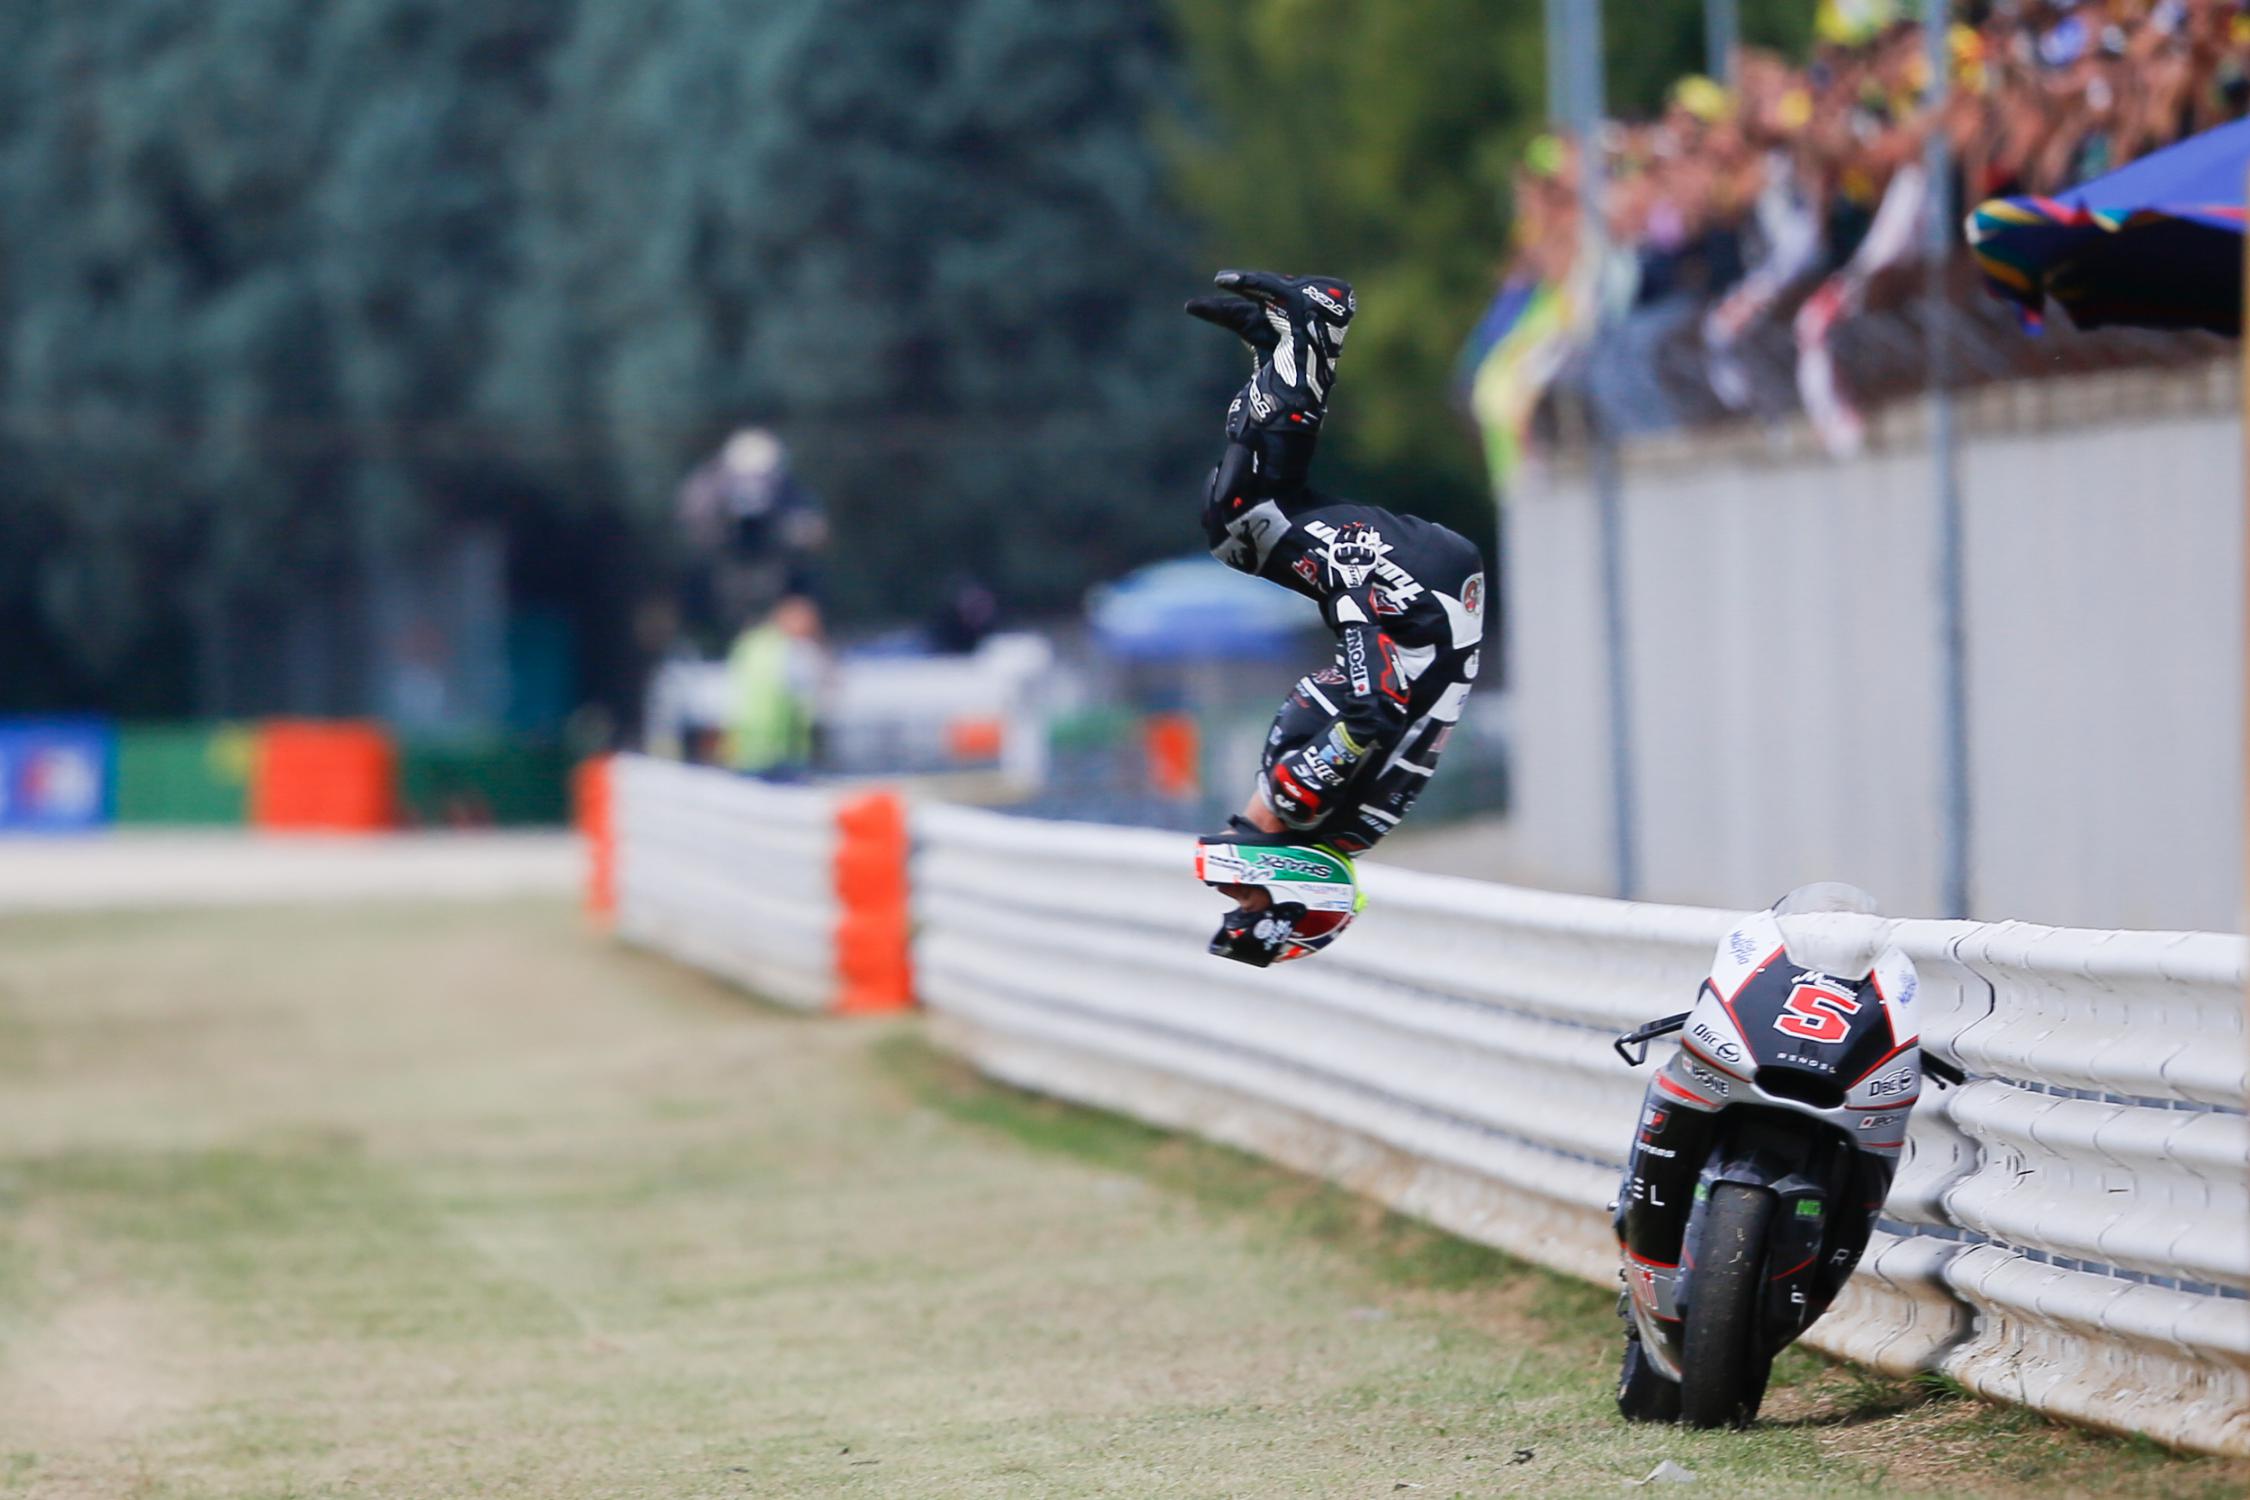 Moto2 Champion Johann Zarco Rumored To Ride With Suzuki In MotoGP